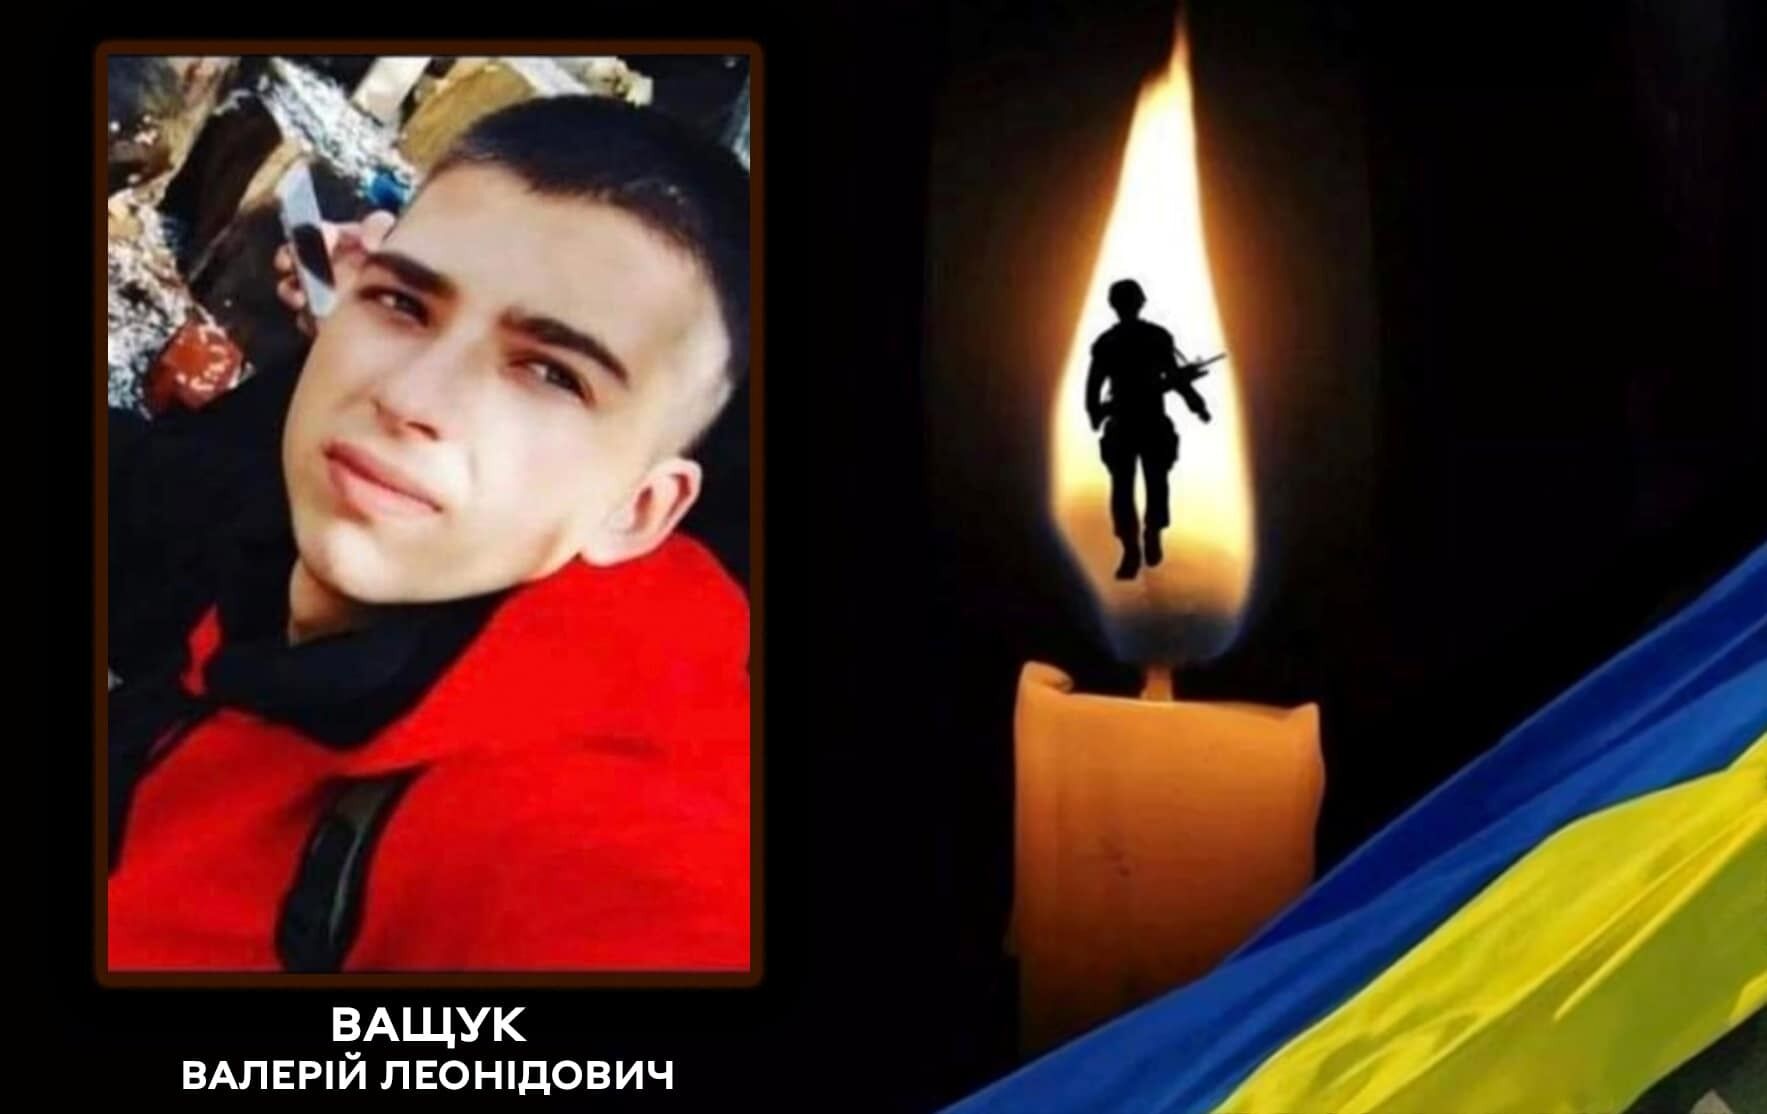 "Війна не щадить нікого": в боях за Україну загинув нацгвардієць із Вінниччини, який збирався одружитися. Фото